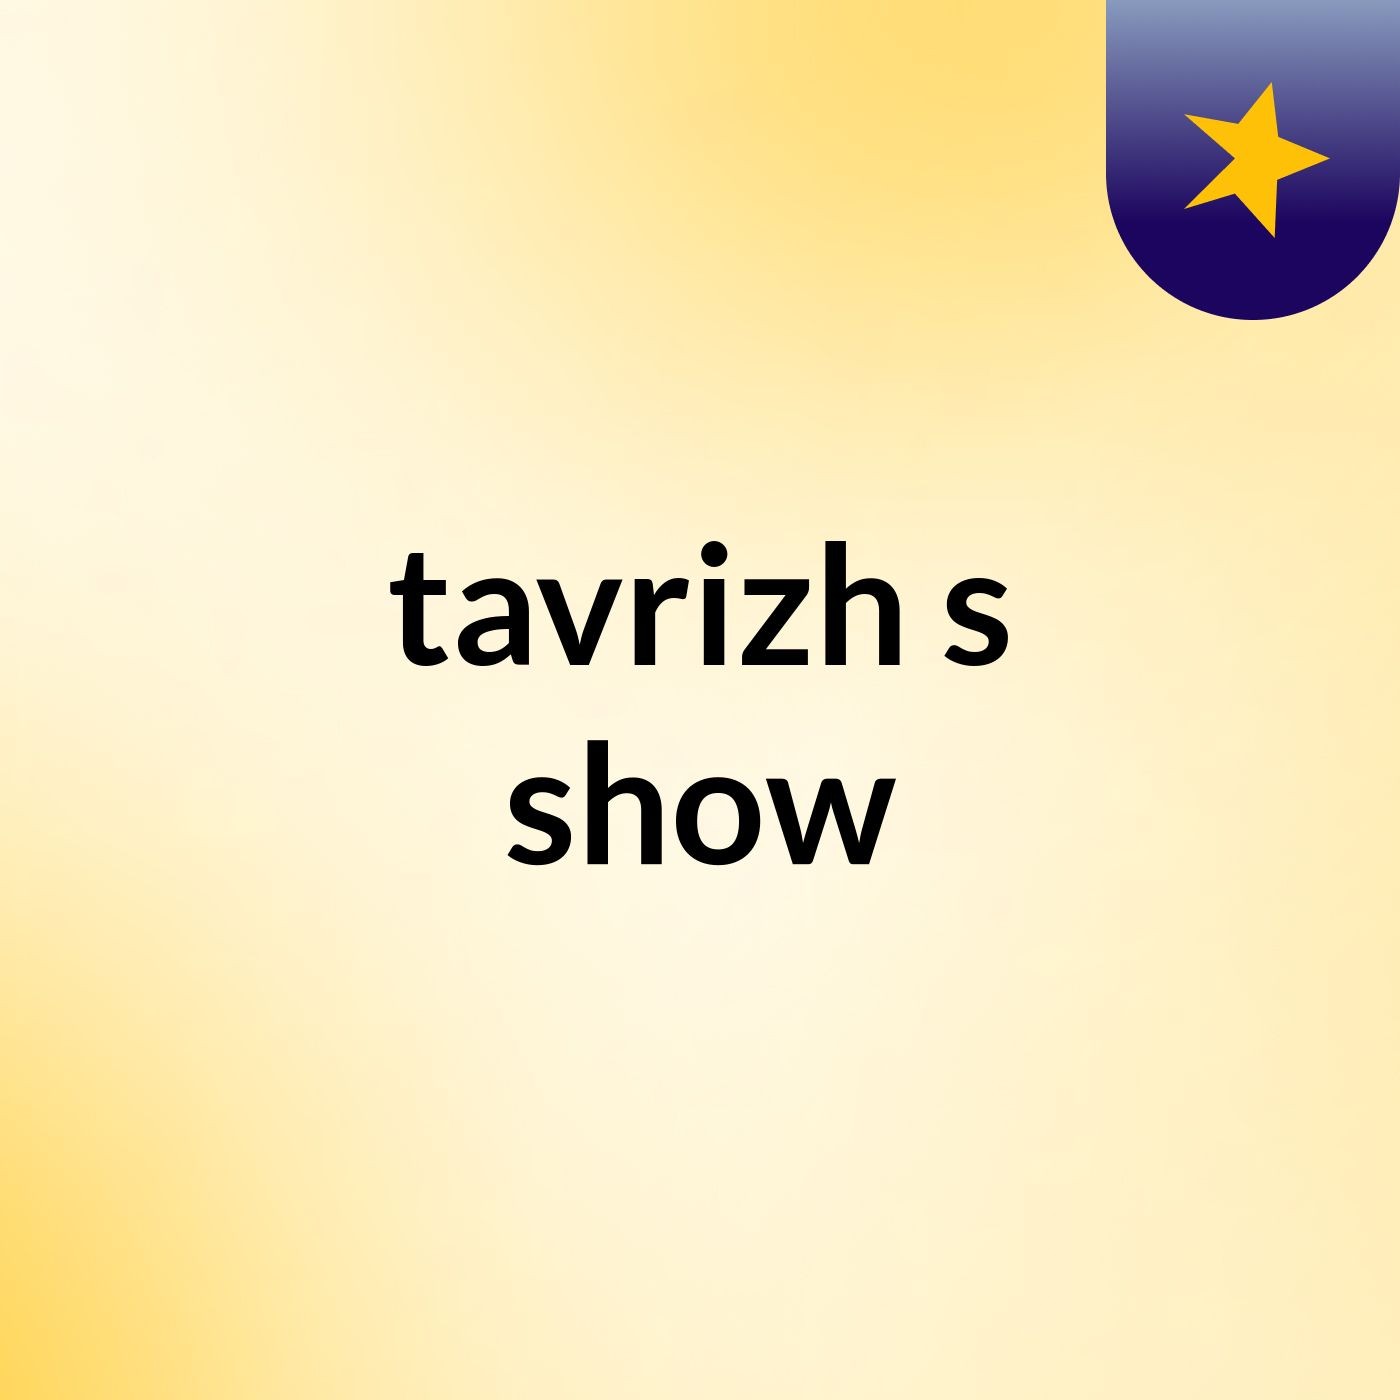 tavrizh's show